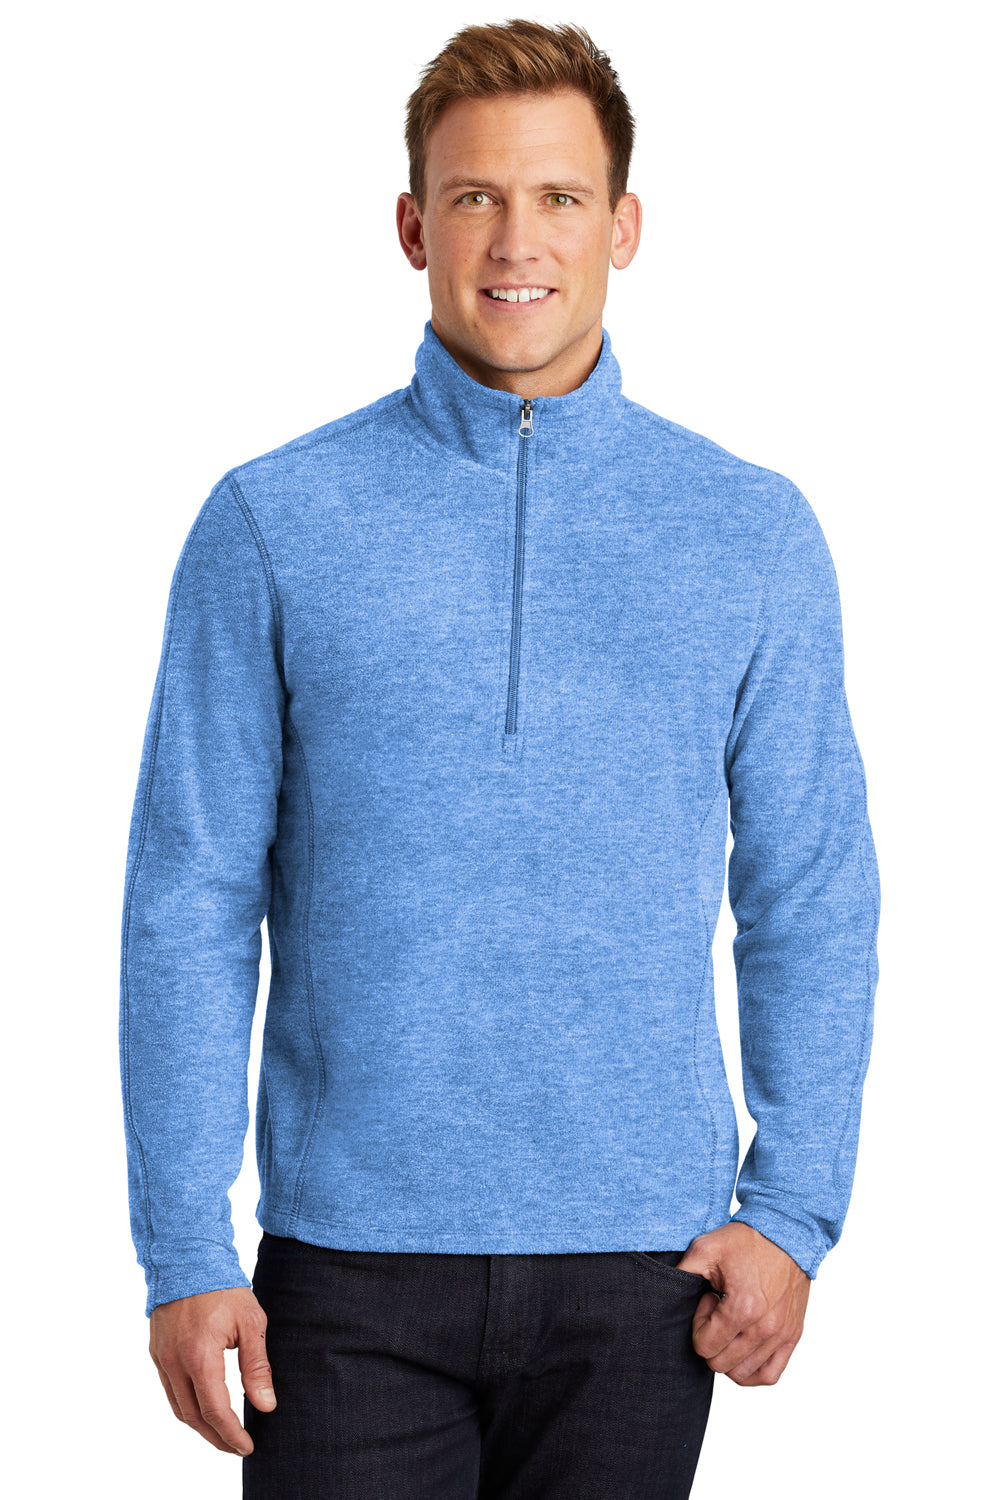 Port Authority F234 Mens Heather Microfleece 1/4 Zip Sweatshirt Royal Blue Front